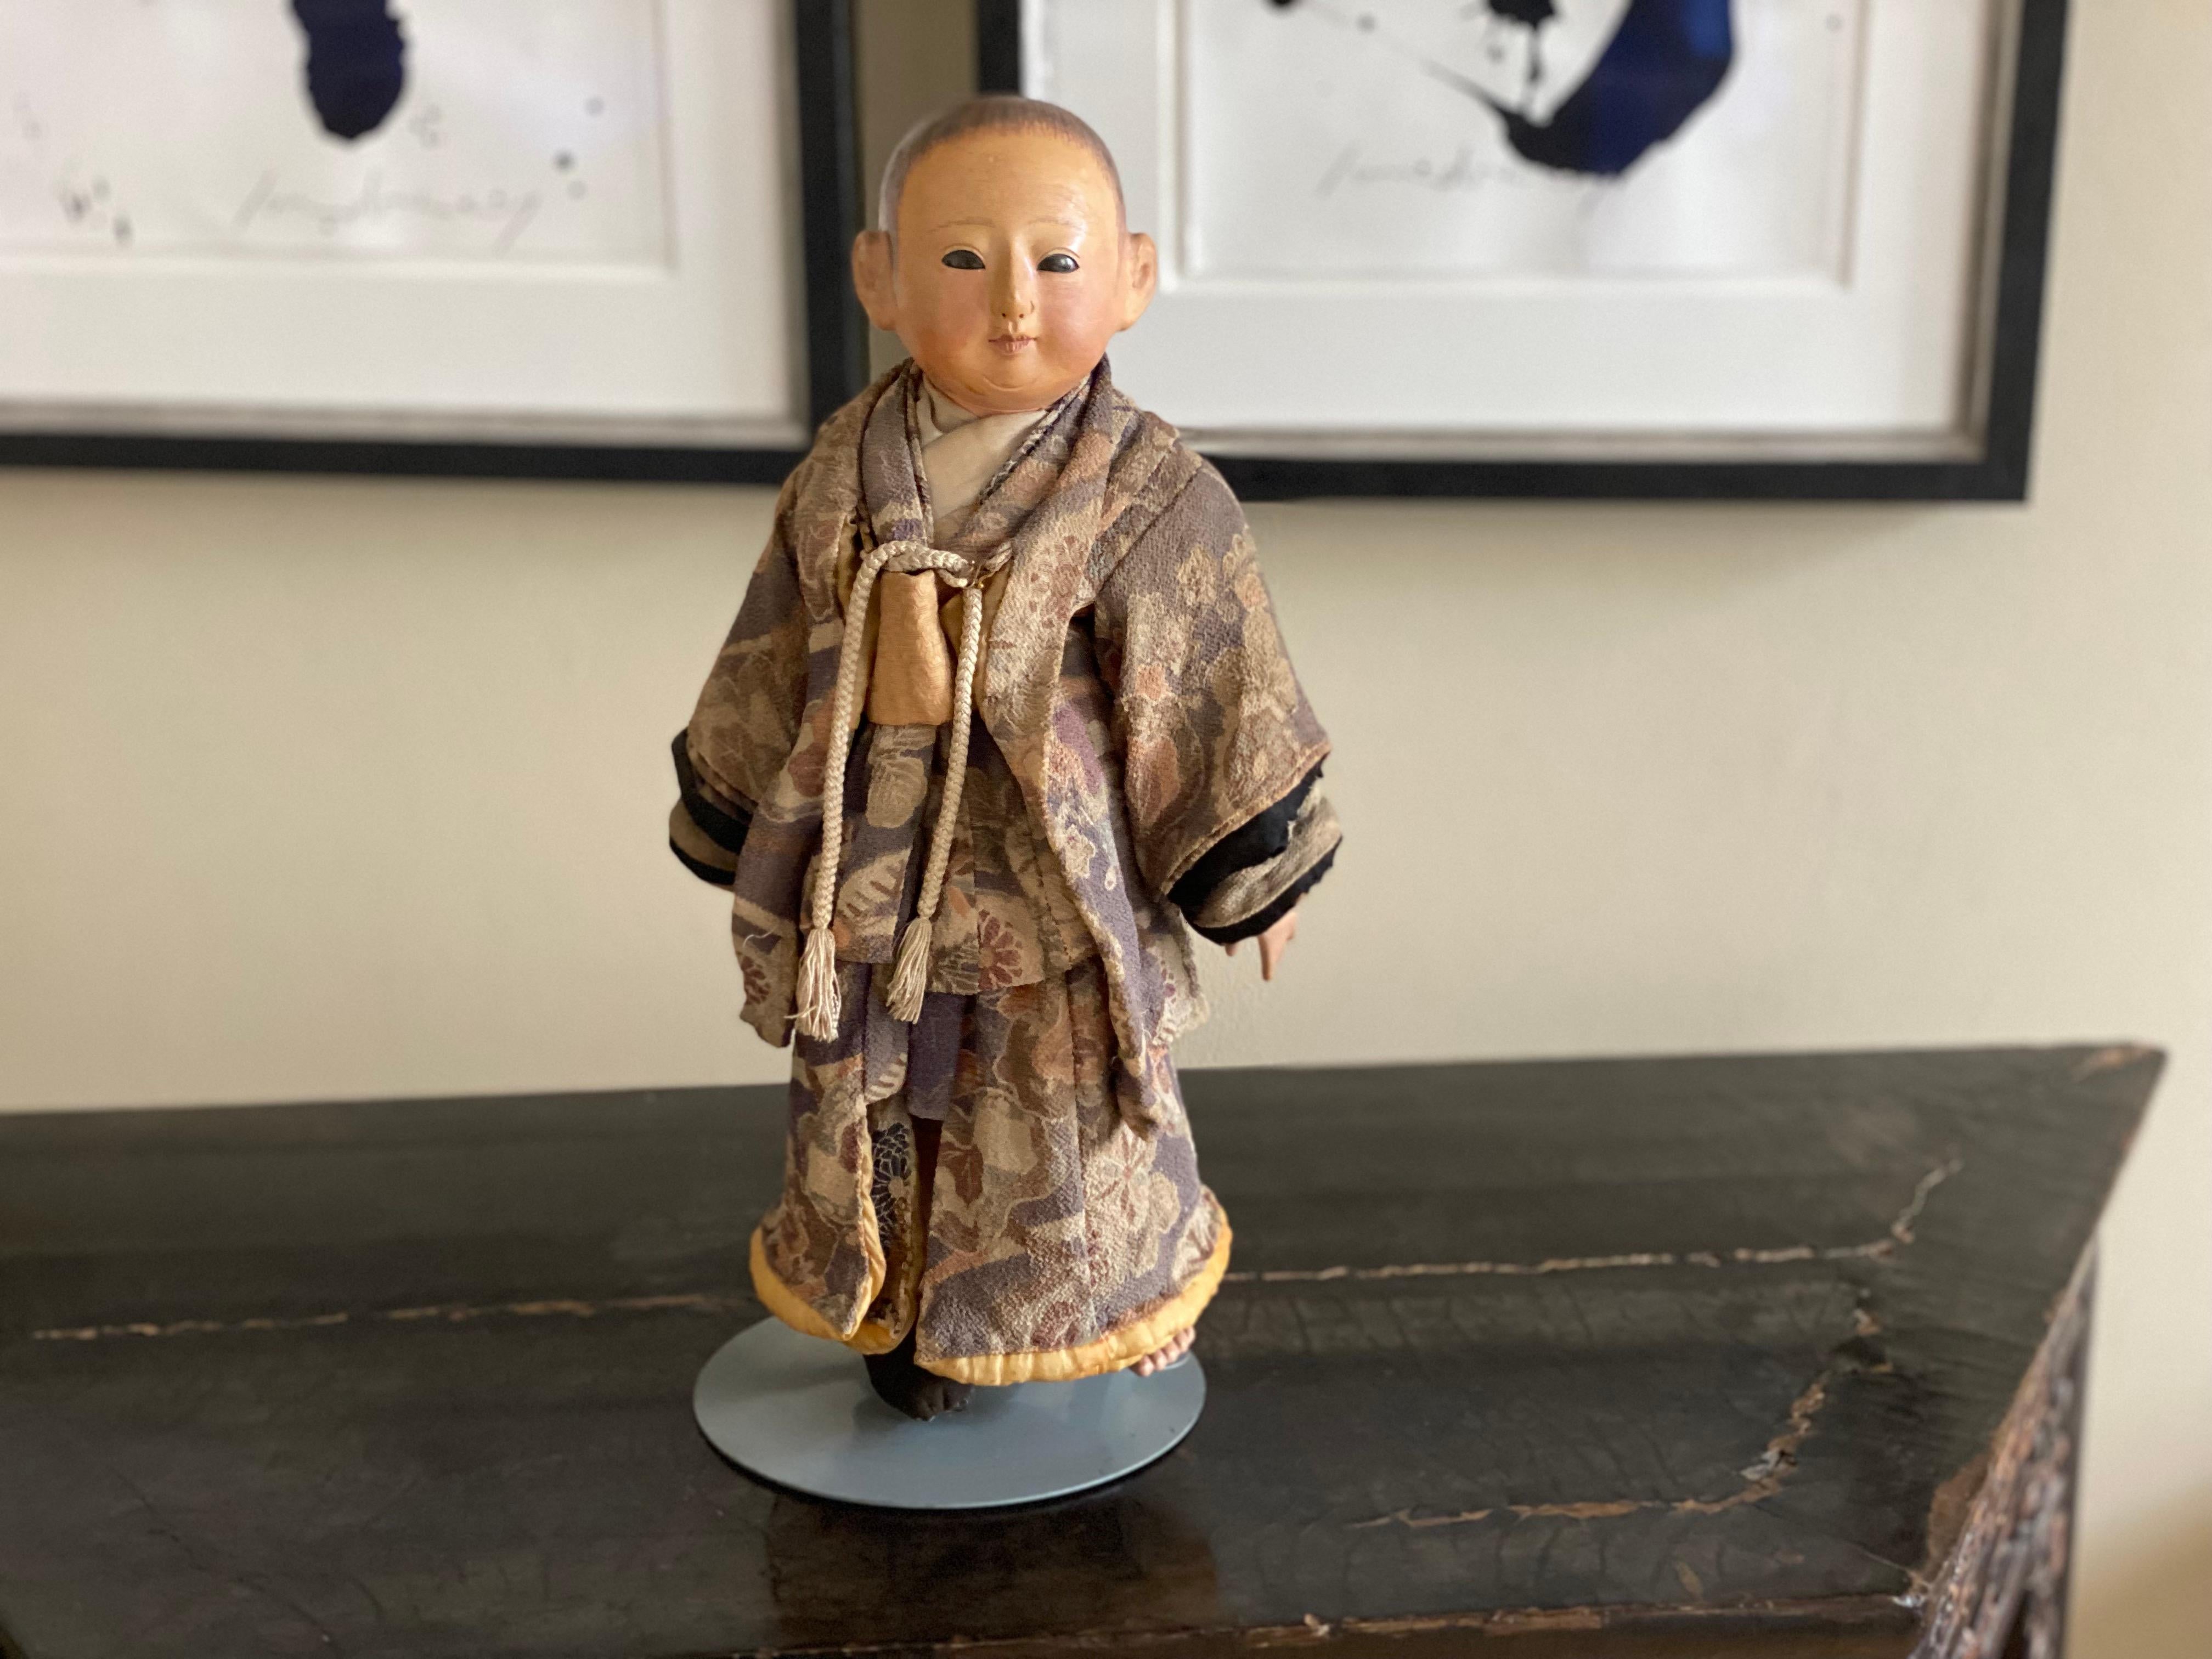 Die Ichimatsu Ningyo-Puppe ist eine japanische Muschelkalkpuppe aus der Meiji-Zeit. Der Puppenkörper sowie der Kopf, die Unterarme, Hände, Beine und Füße sind aus Muschelkalk, nur die Oberarme sind aus Stoff gefertigt.

Dieser kleine Kerl ist